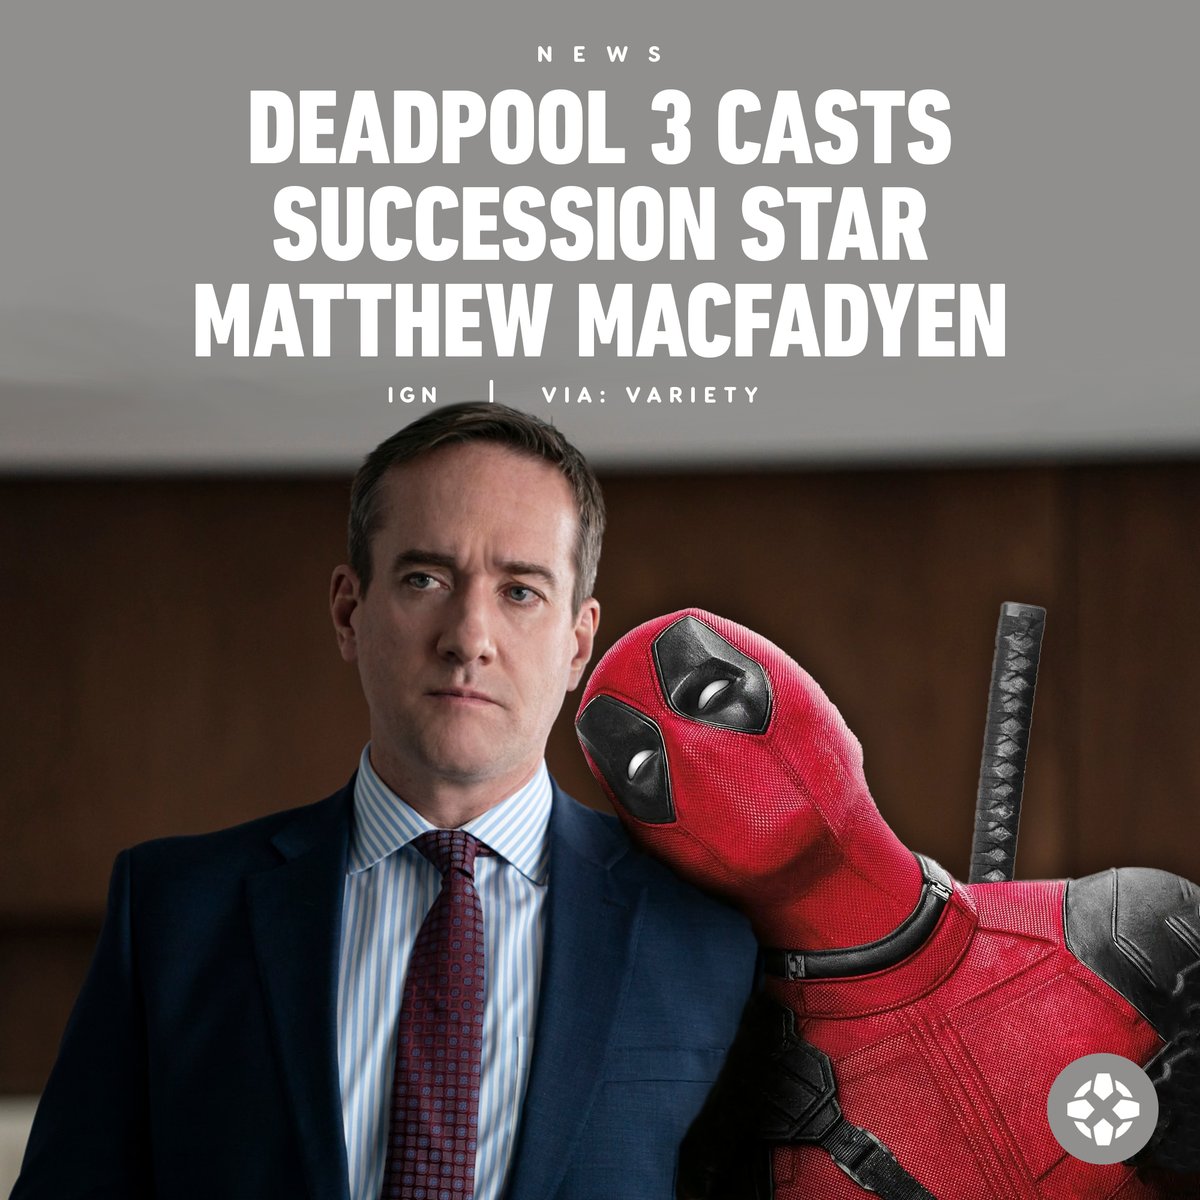 Deadpool 3 casts Succession star Matthew Macfadyen